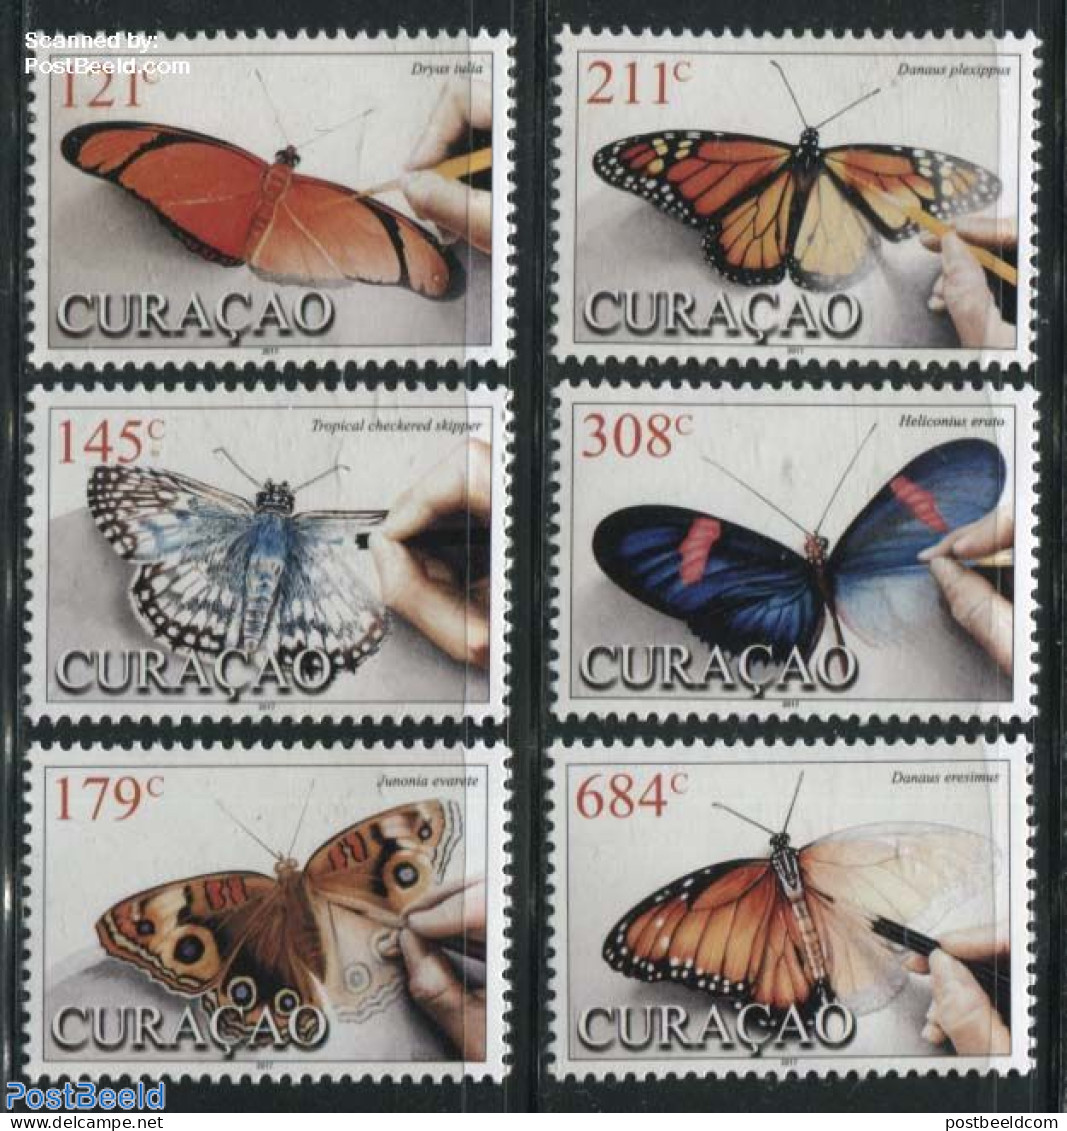 Curaçao 2017 Butterflies 6v, Mint NH, Nature - Butterflies - Curaçao, Nederlandse Antillen, Aruba